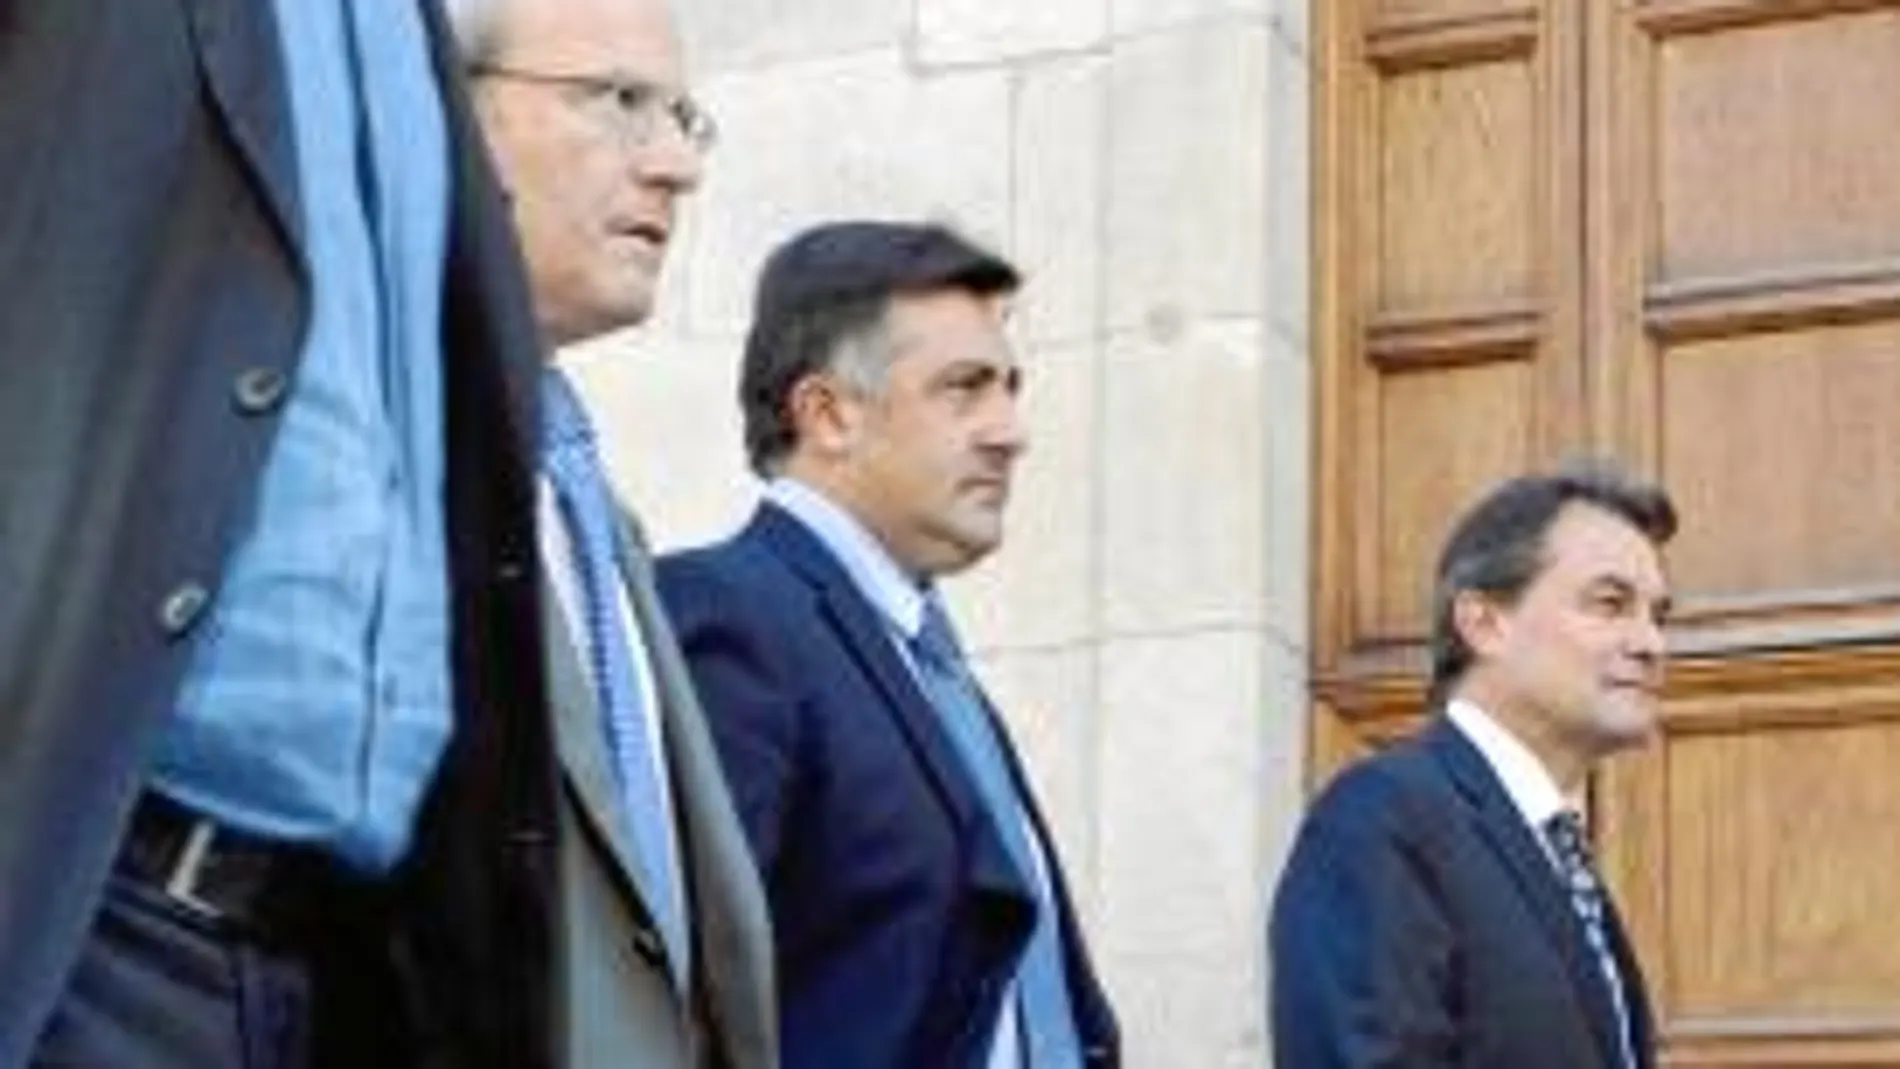 Montilla, Puigcercós y Mas (y Herrera) se reunieron ayer en el Palau de la Generalitat por espacio de una hora. Hoy seguirán los contactos para buscar una resolución conjunta que parece difícil